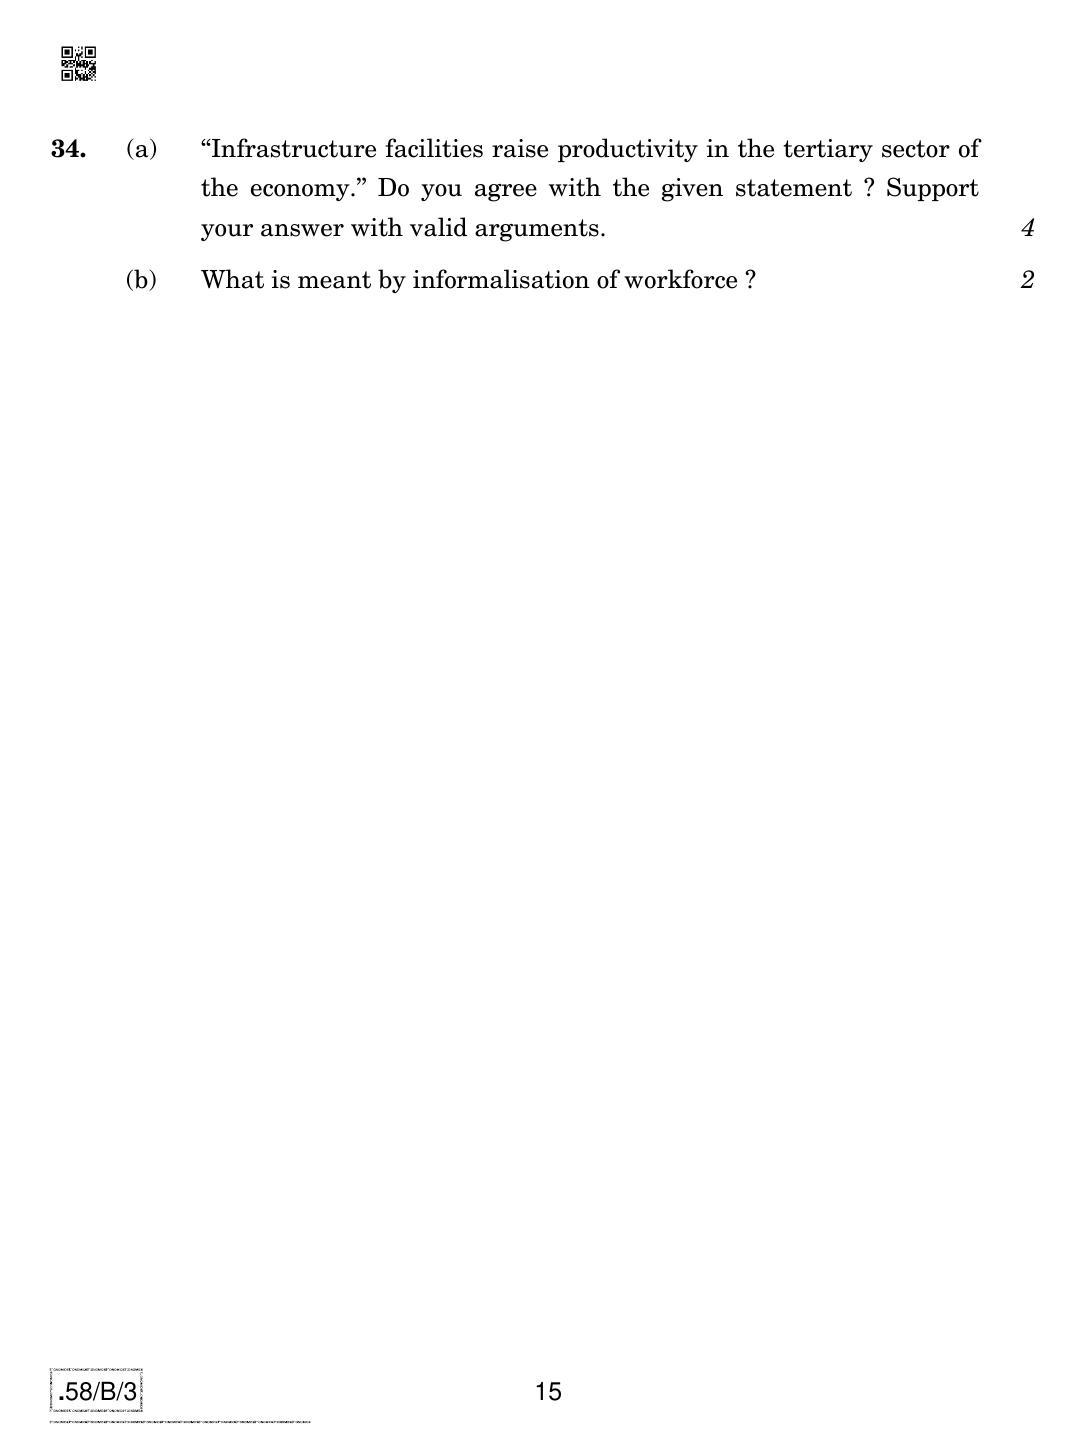 CBSE Class 12 58-C-3 - Economics 2020 Compartment Question Paper - Page 15